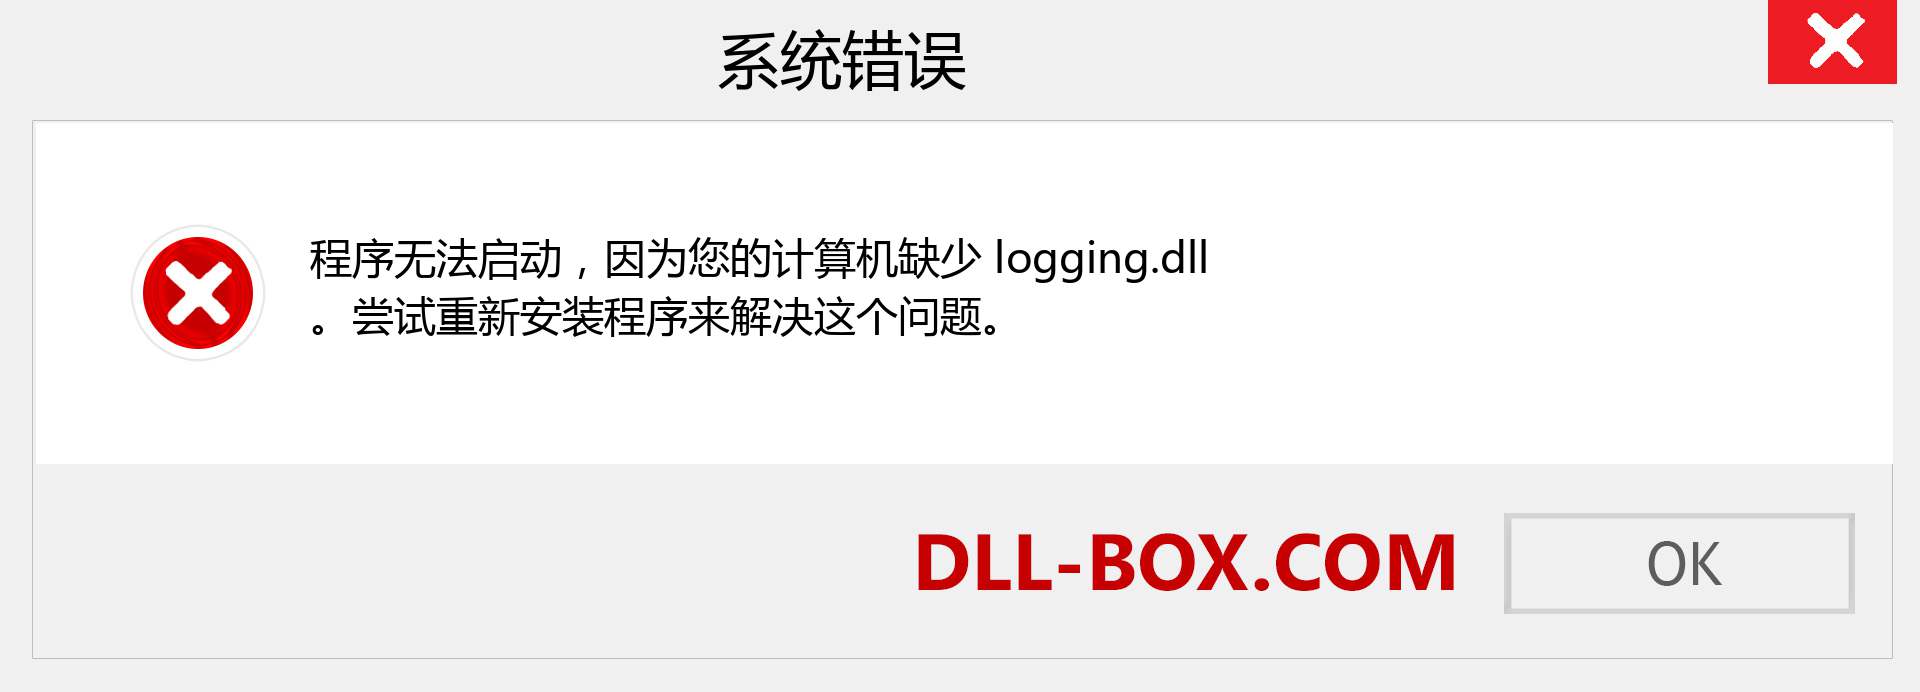 logging.dll 文件丢失？。 适用于 Windows 7、8、10 的下载 - 修复 Windows、照片、图像上的 logging dll 丢失错误